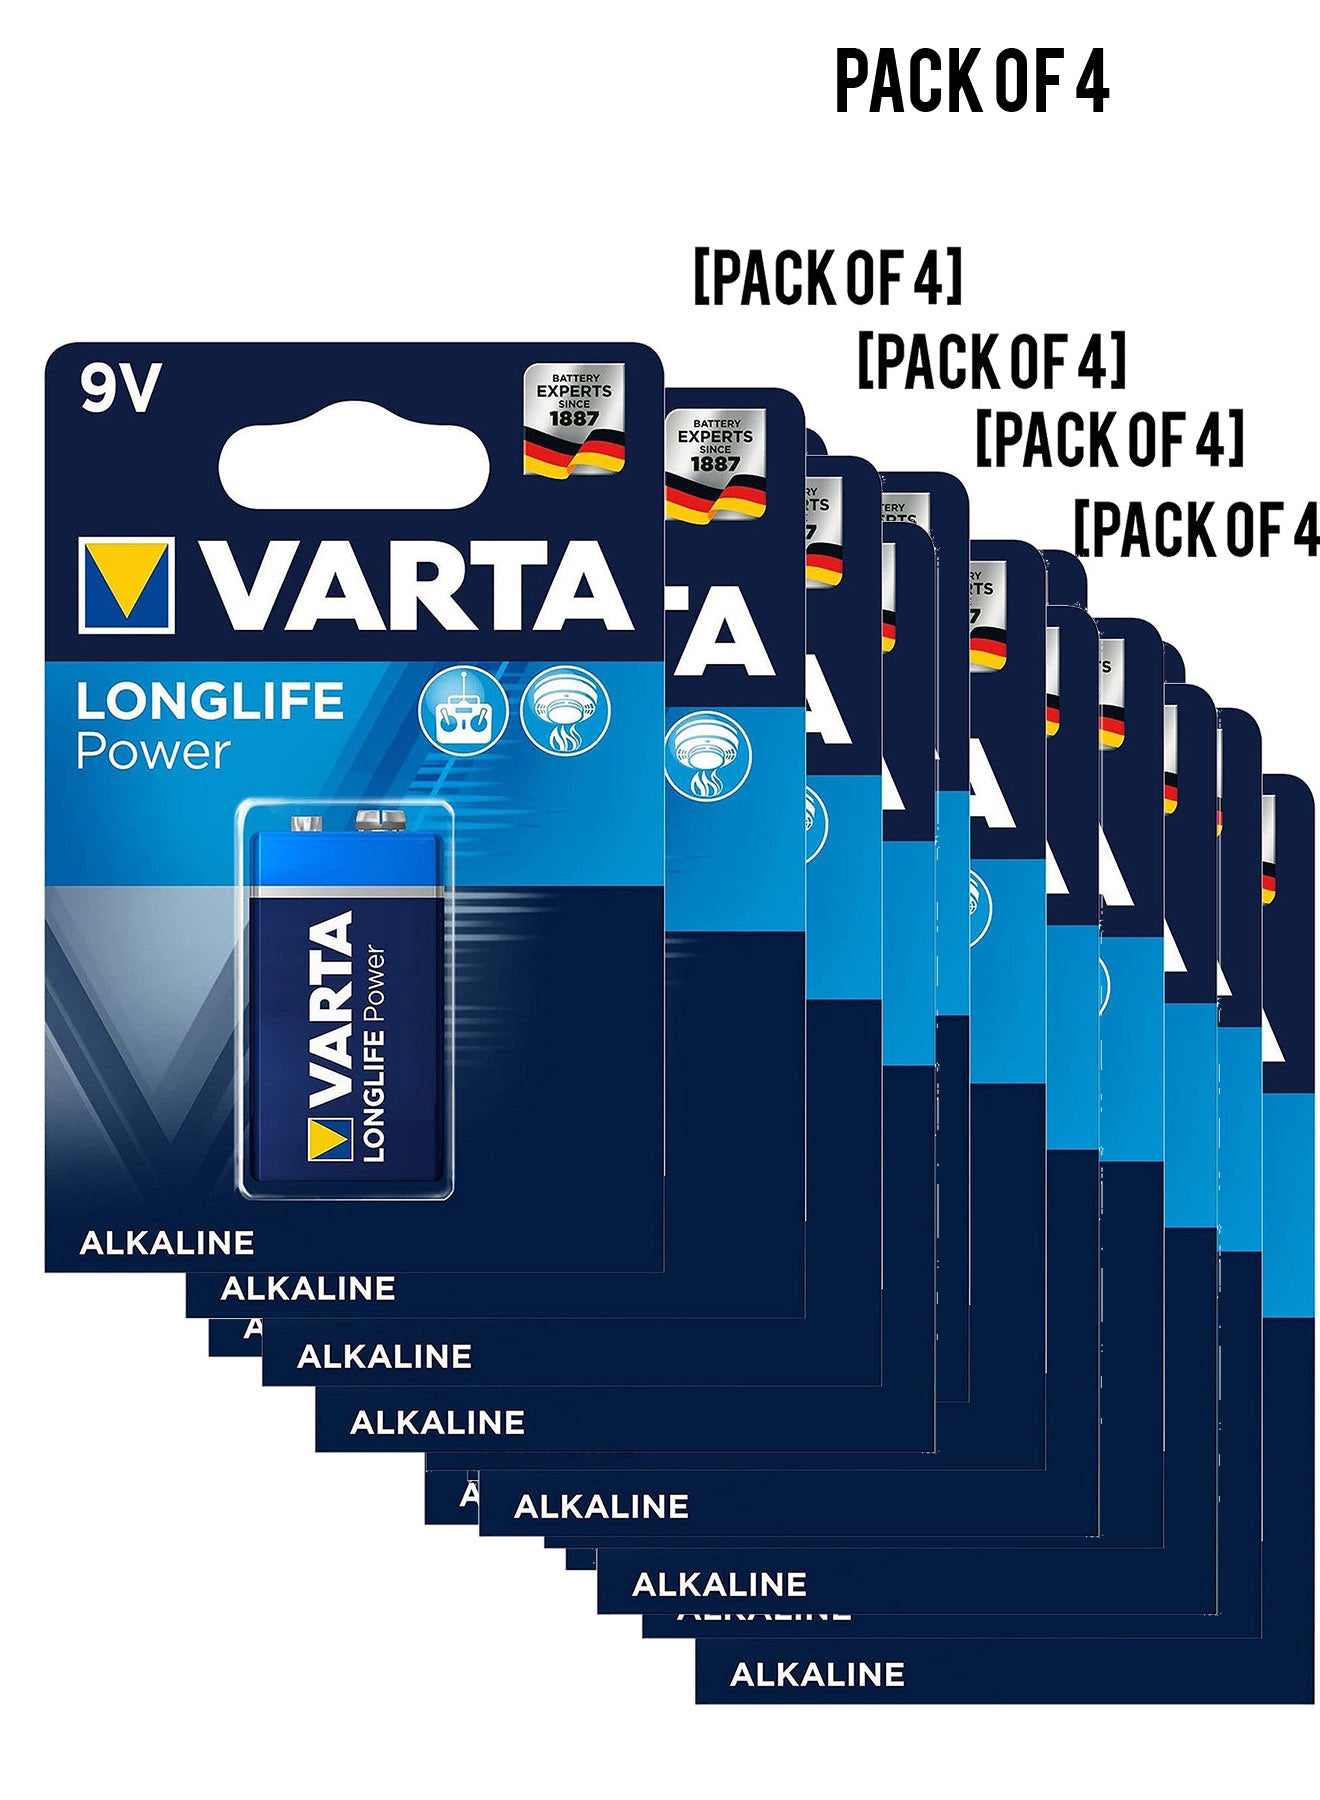 Varta Long Life Power 9V Block Alkaline Battery 1pack Value Pack of 4 